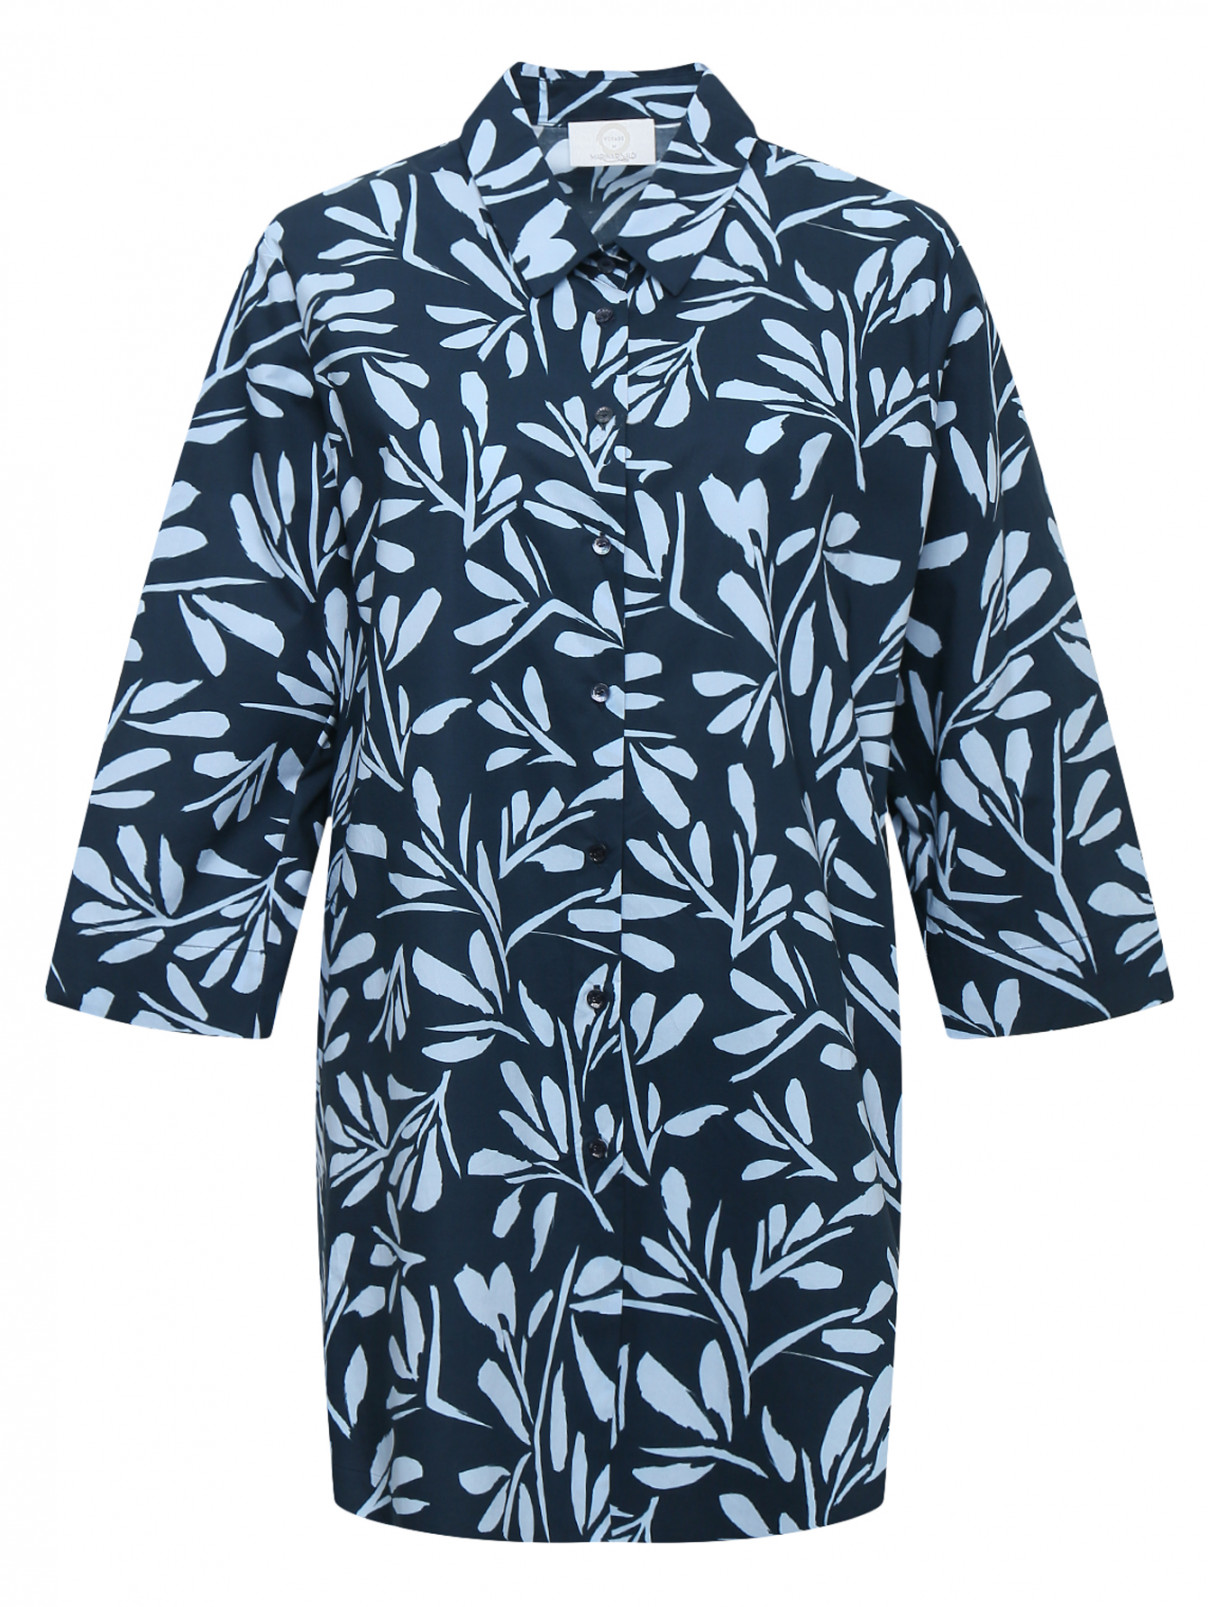 Рубашка из хлопка с узором Voyage by Marina Rinaldi  –  Общий вид  – Цвет:  Синий